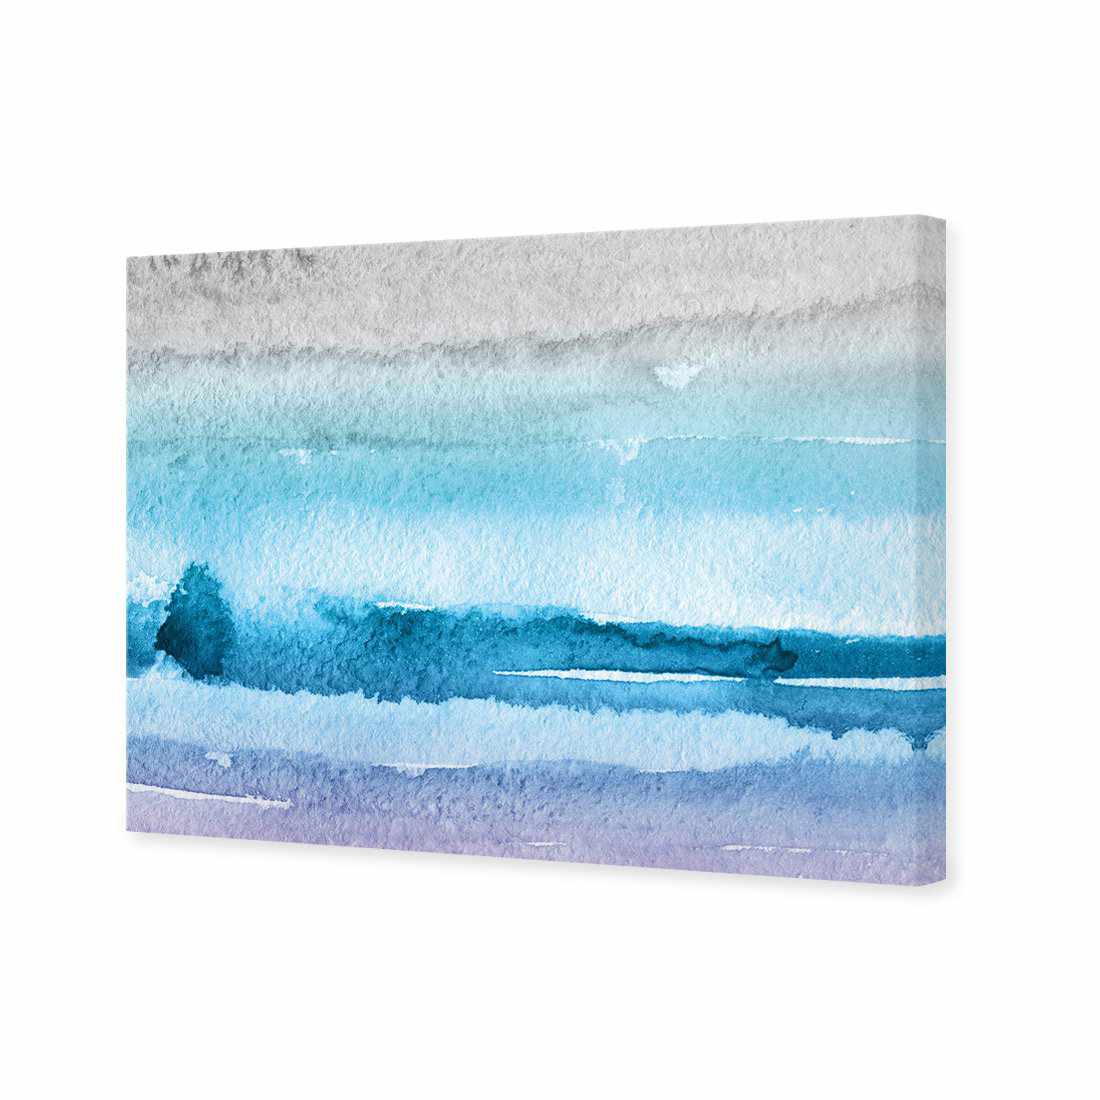 Aquarelle Canvas Art-Canvas-Wall Art Designs-45x30cm-Canvas - No Frame-Wall Art Designs